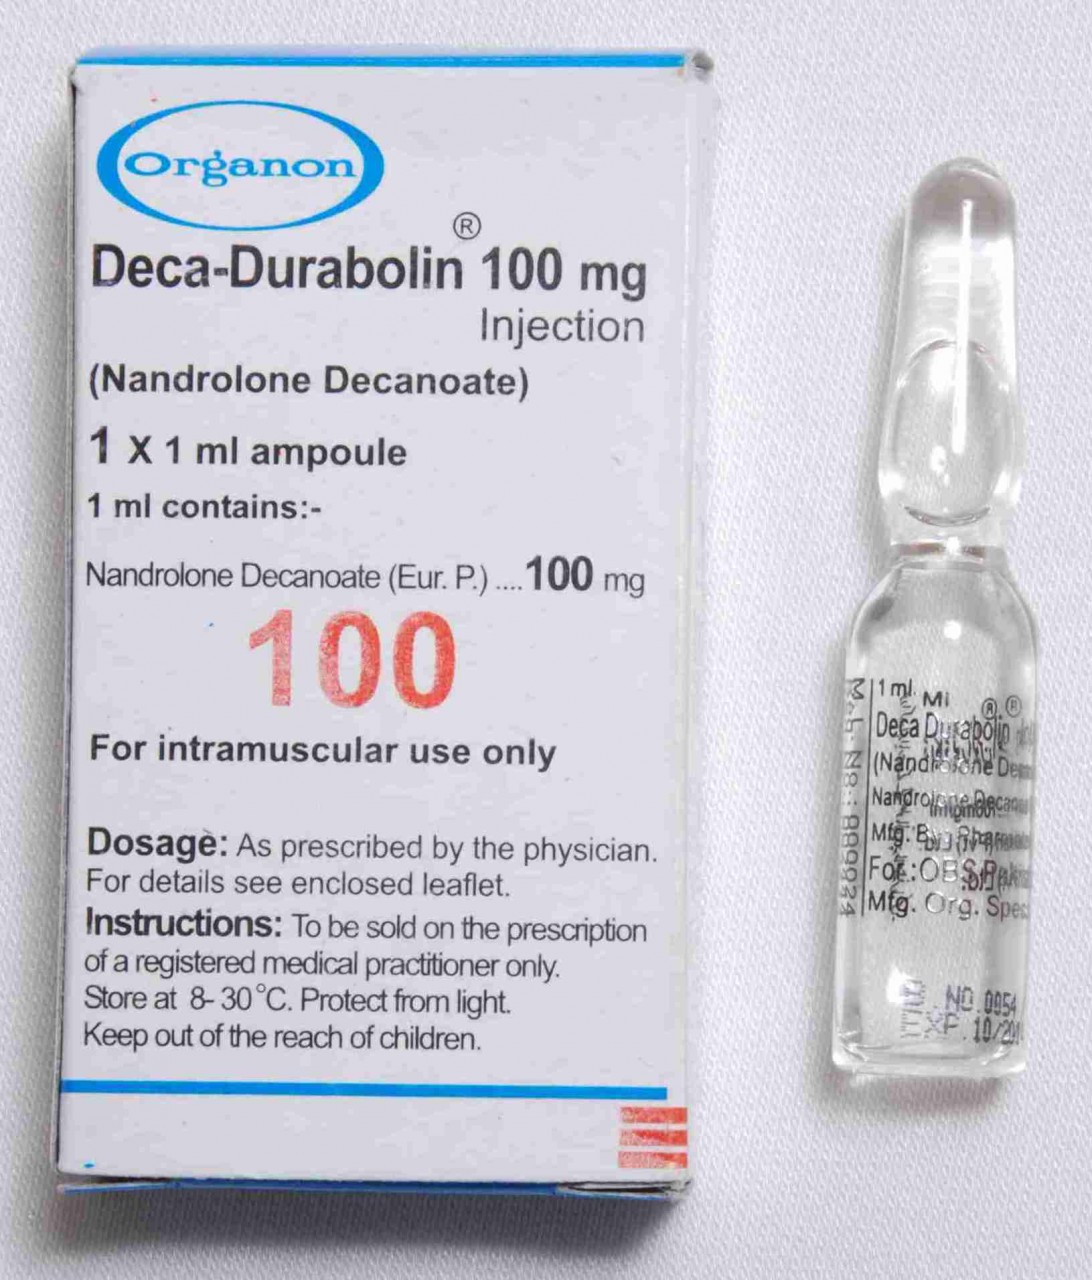 Deca Durabolin (Nandrolone Decanoate) by Organon